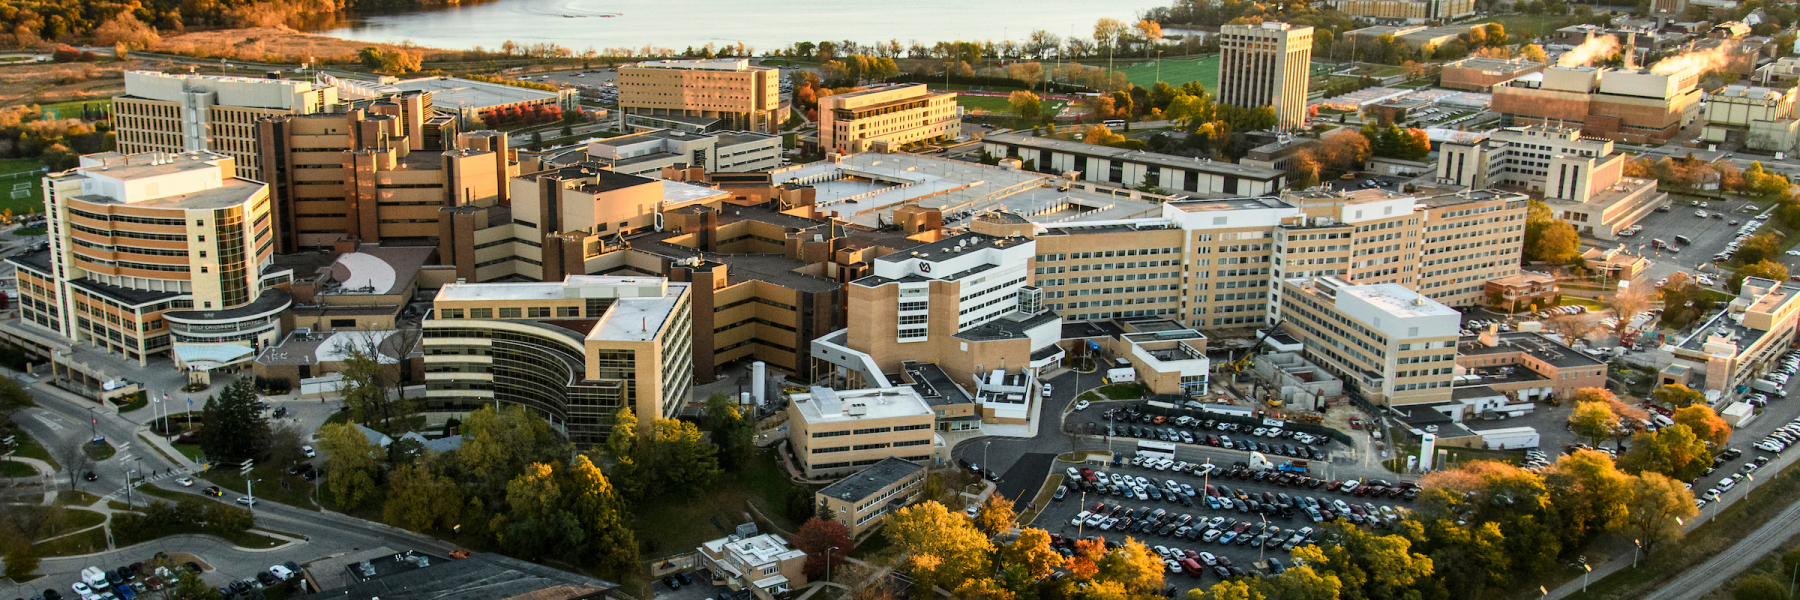 Medical campus at UW-Madison